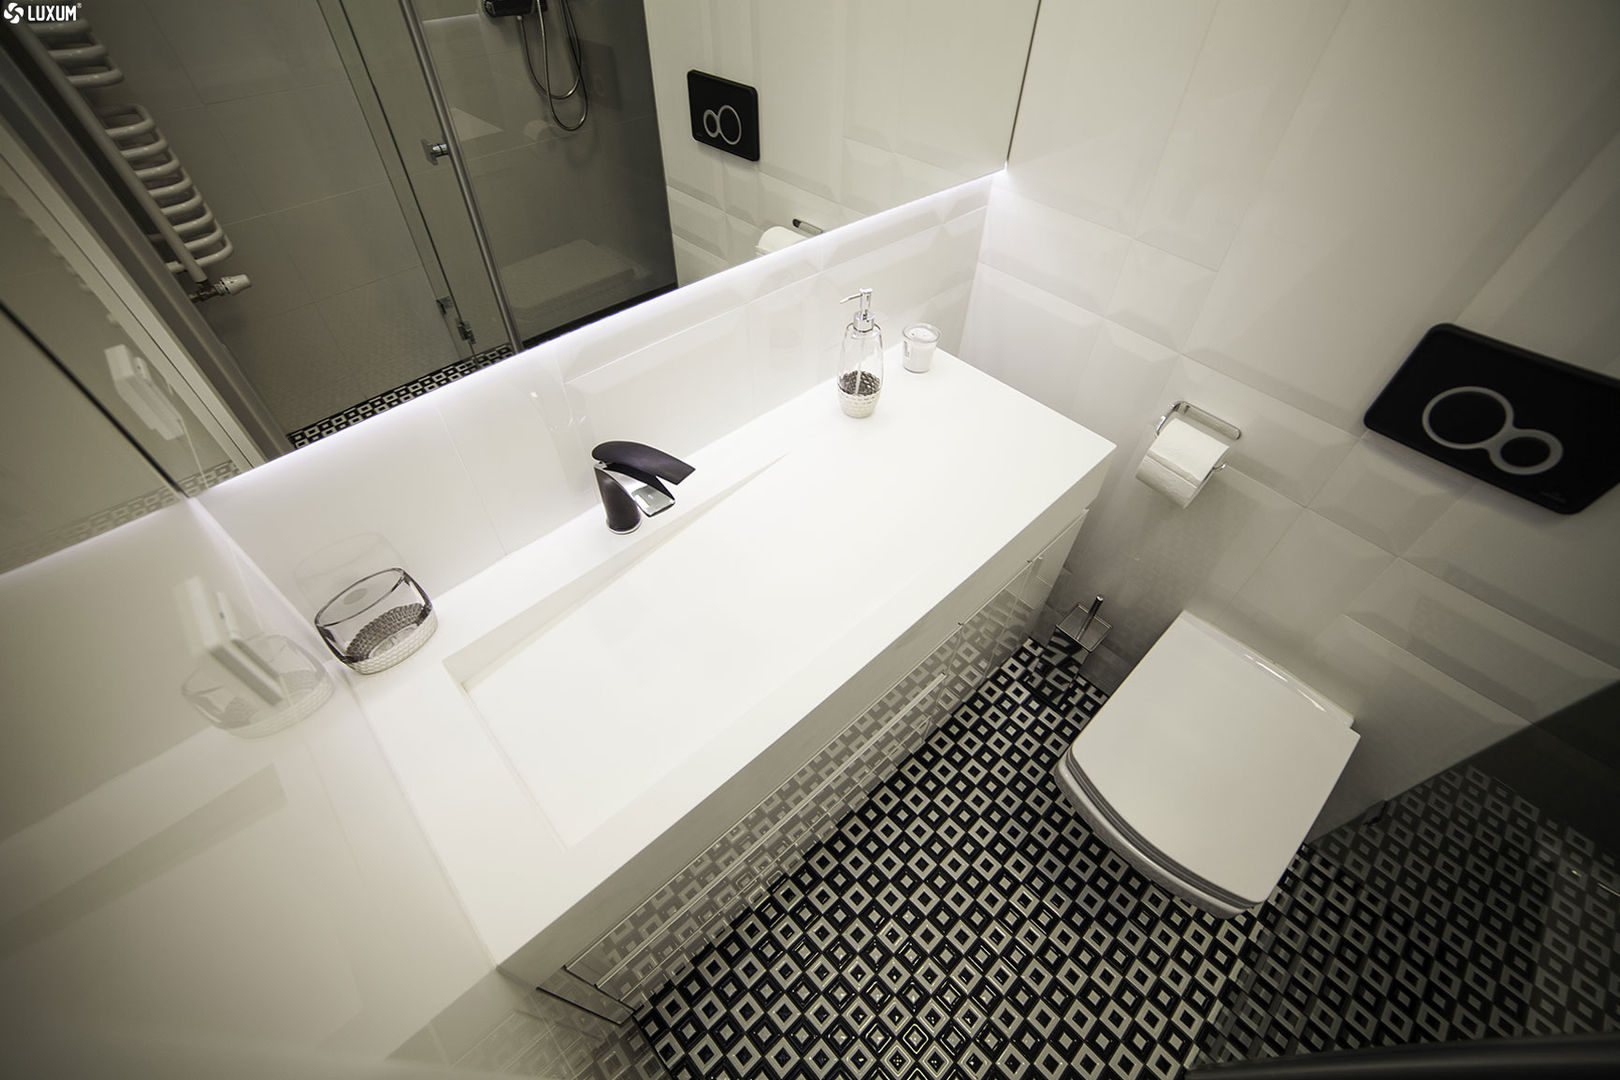 Prostokątna umywalka z odpływem liniowym od Luxum. , Luxum Luxum Bathroom